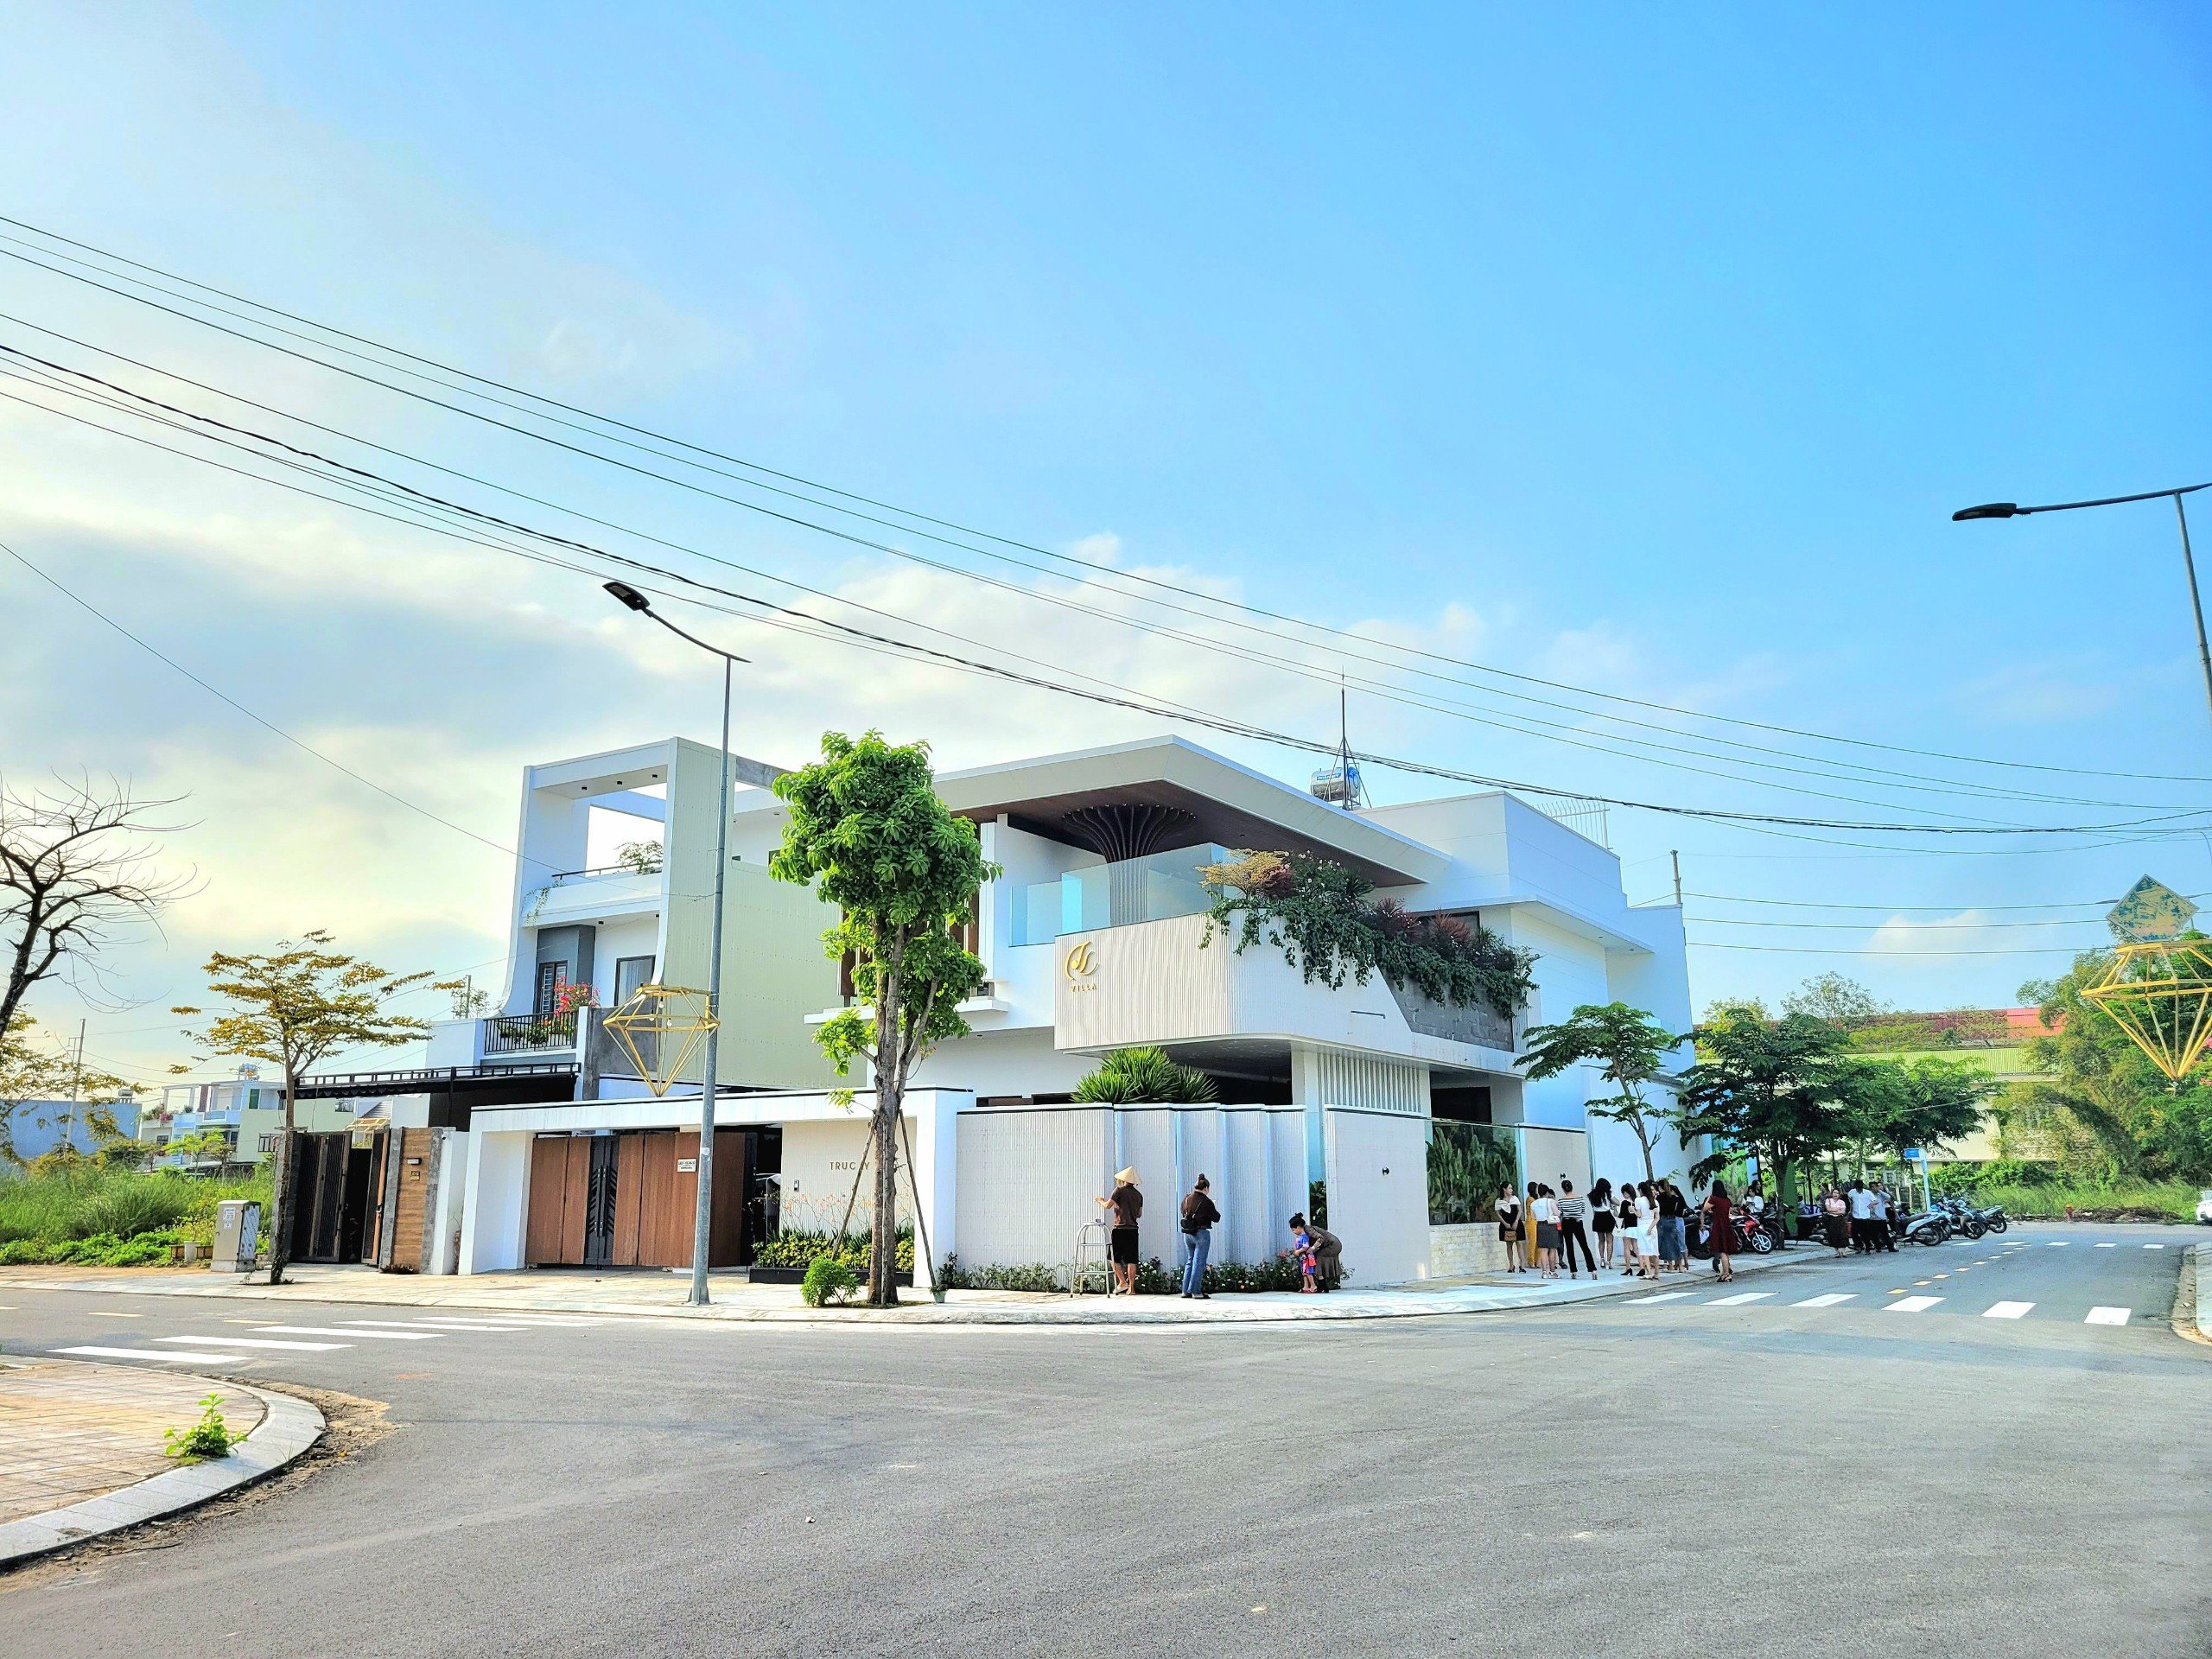 Khu dân cư Nguyễn Tri Phương và quy hoạch chiến lược của thành phố